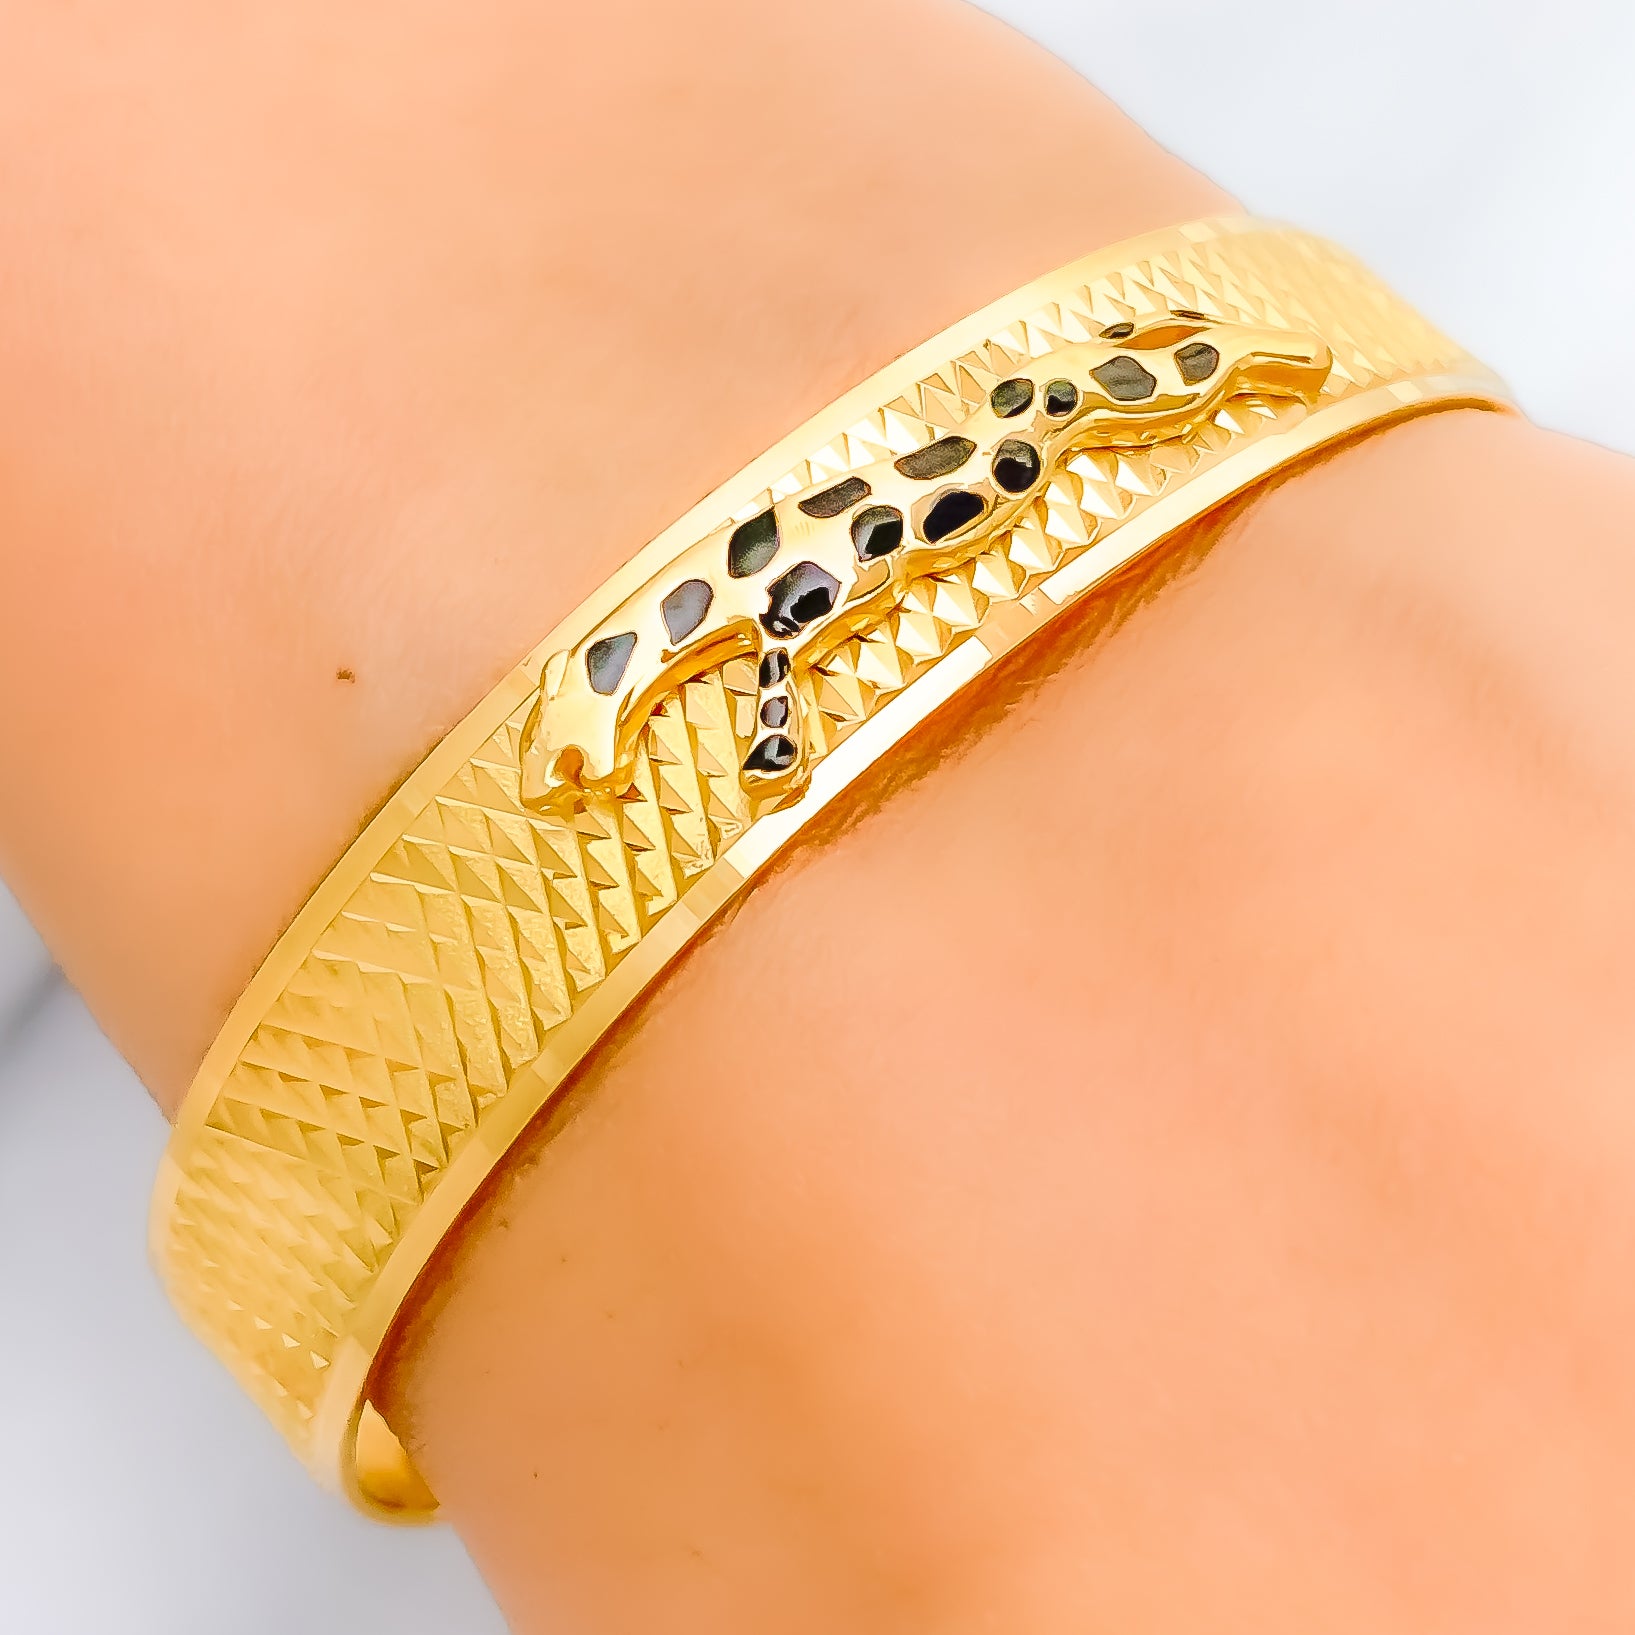 Buy quality 916 Gold Jaguar Design Gents Bracelet in Ahmedabad